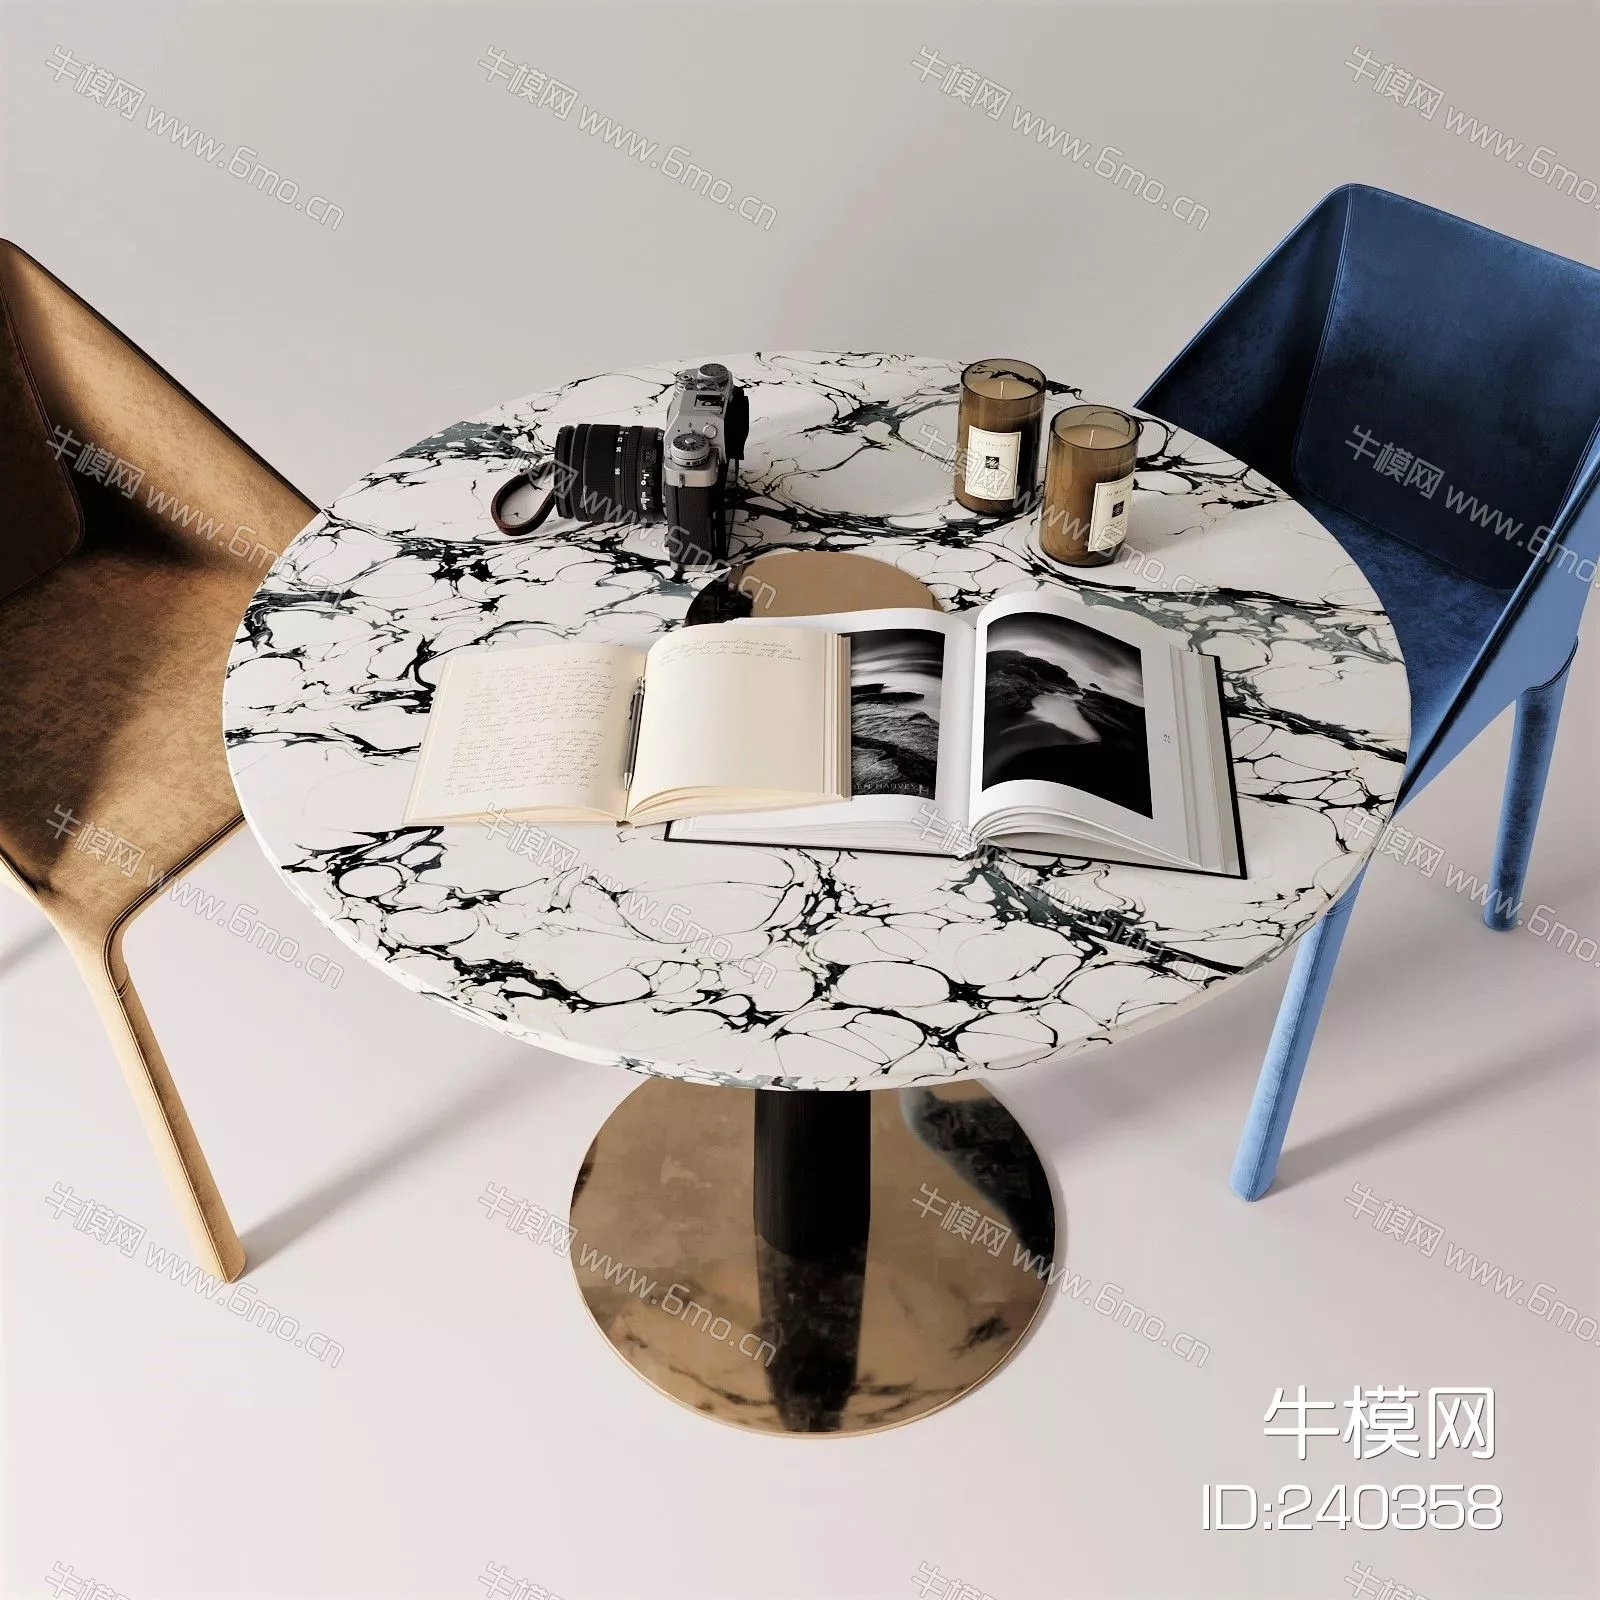 MODERN DINING TABLE SET - SKETCHUP 3D MODEL - ENSCAPE - 240358